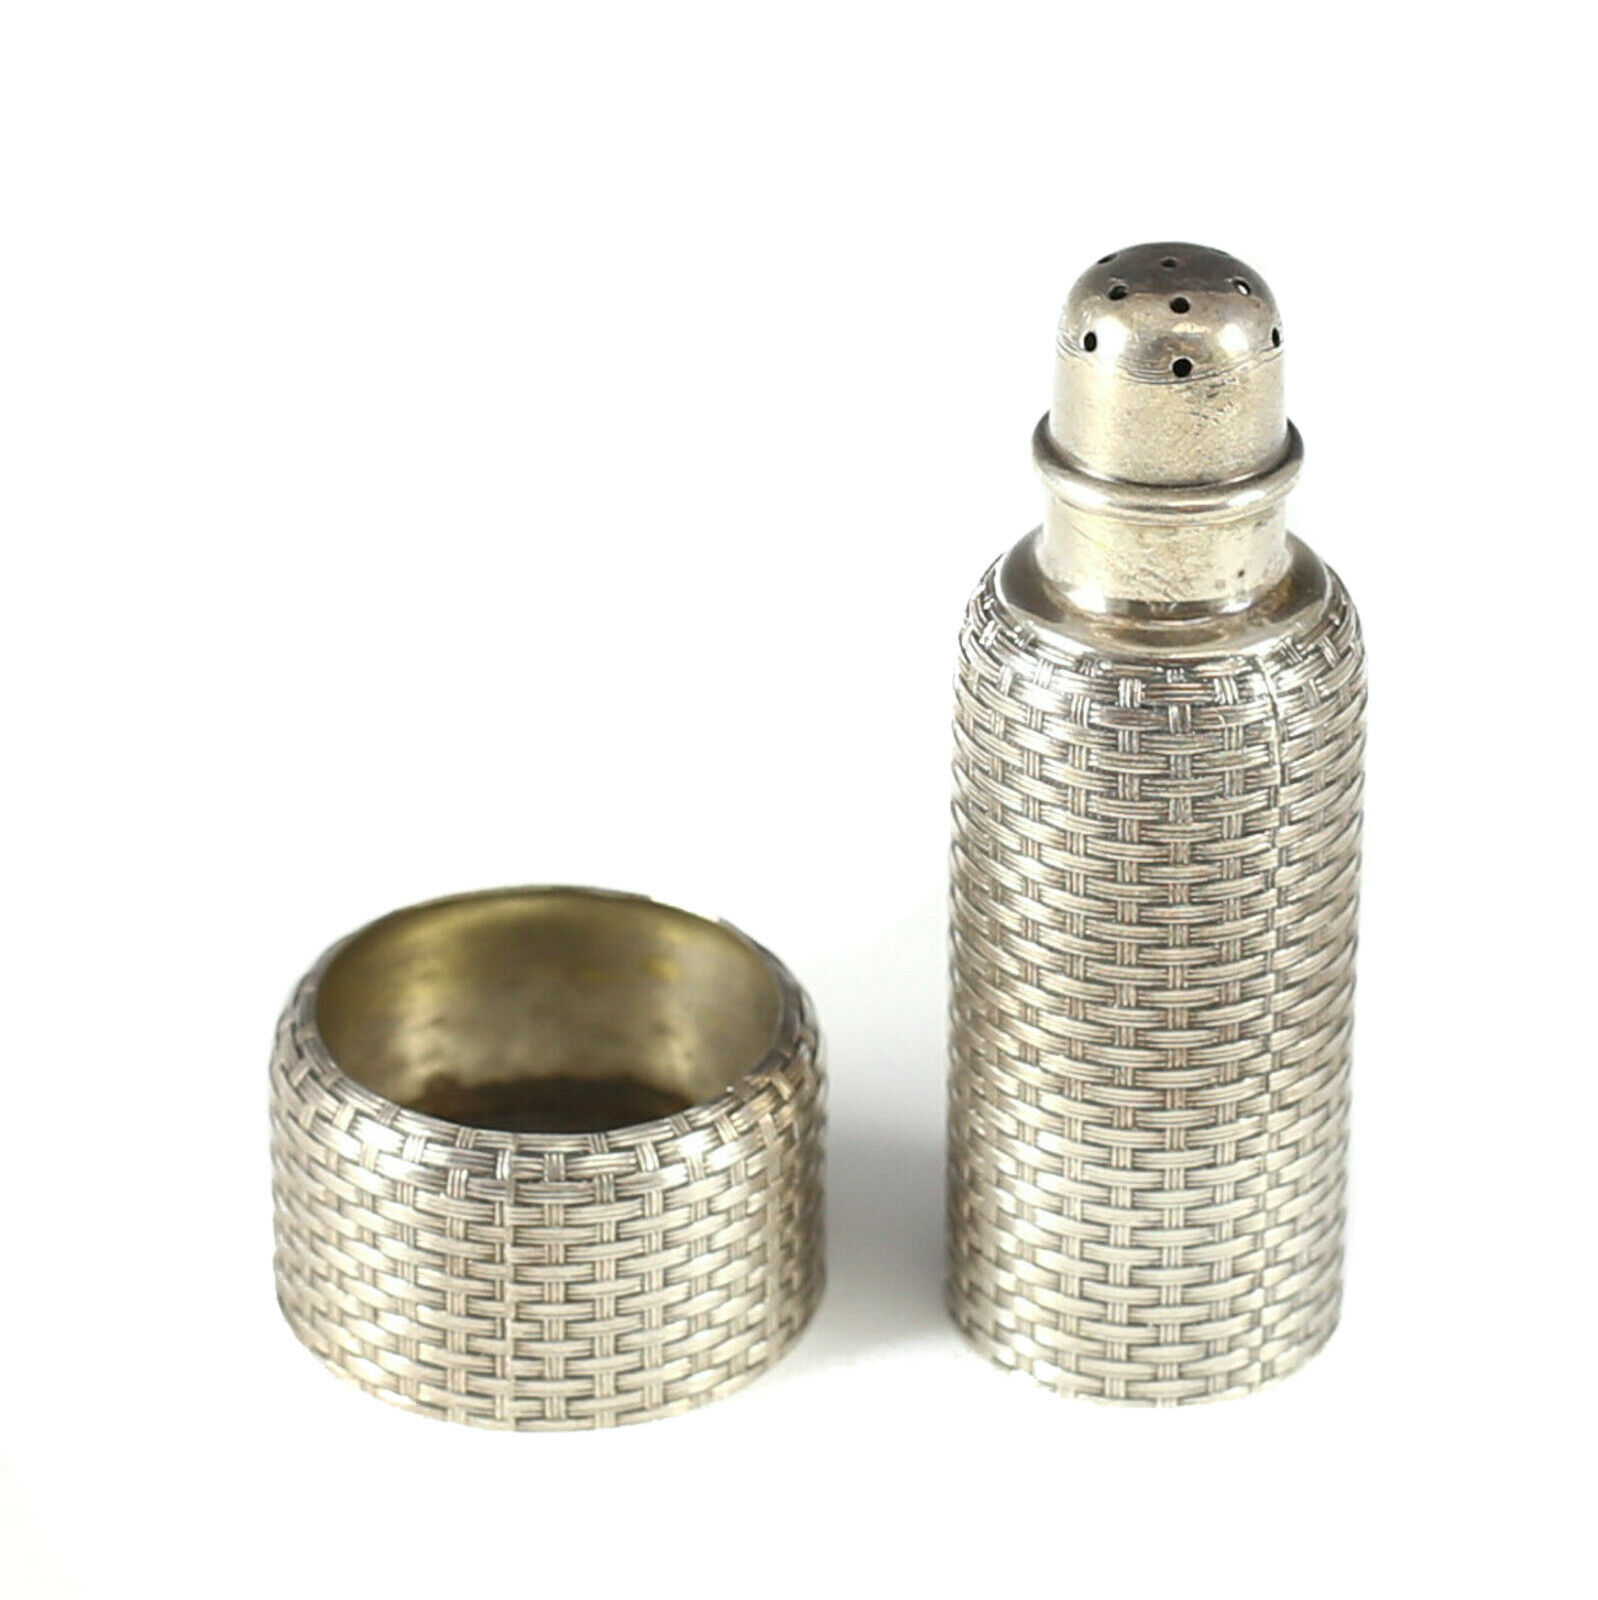 2pc Sterling Silver Basket Weave Salt Shaker & Salt Cellar by Wh